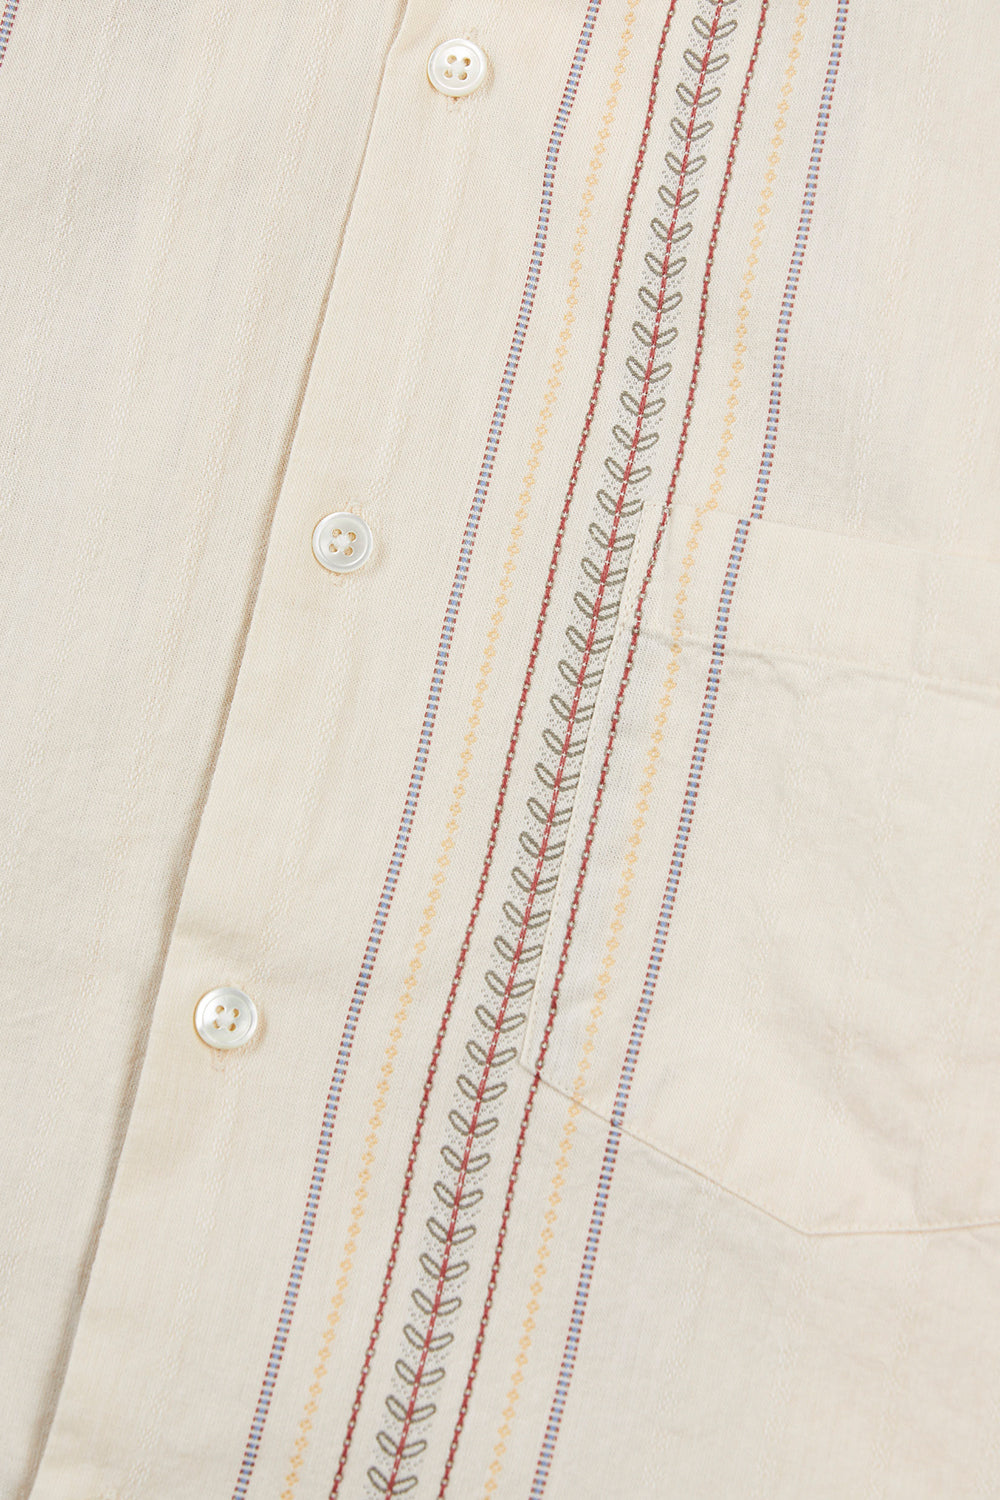 Portuguese Flannel Tapestry Shirt (Ecru)